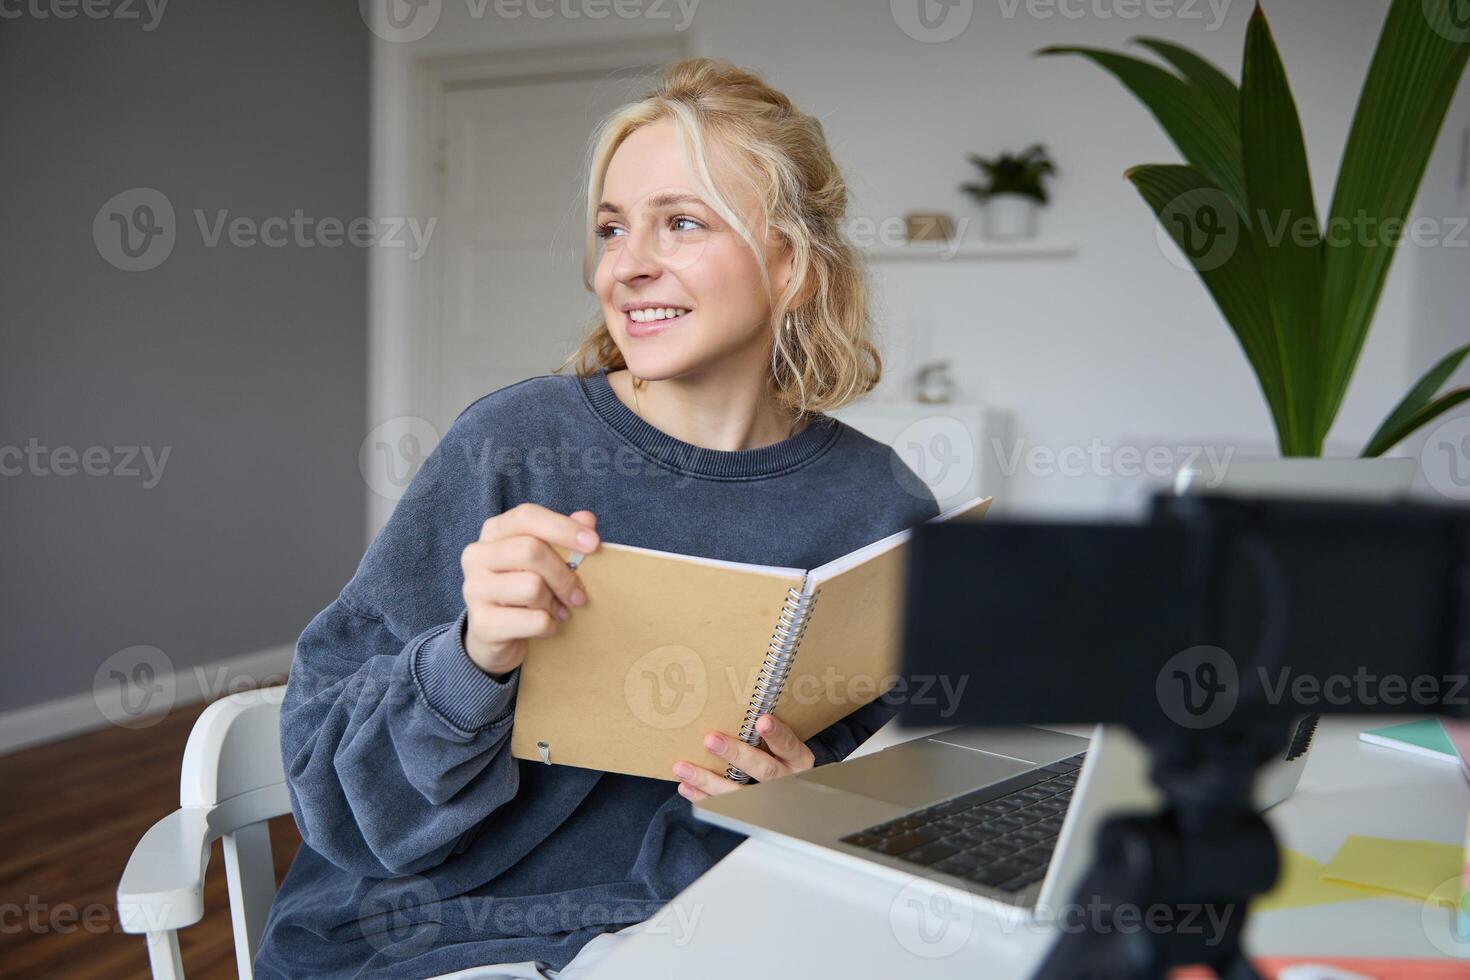 porträtt av leende blond kvinna, Sammanträde i sovrum, använder sig av bärbar dator och digital kamera, inspelning för livsstil blogg, läsning, använder sig av henne anteckningsbok foto